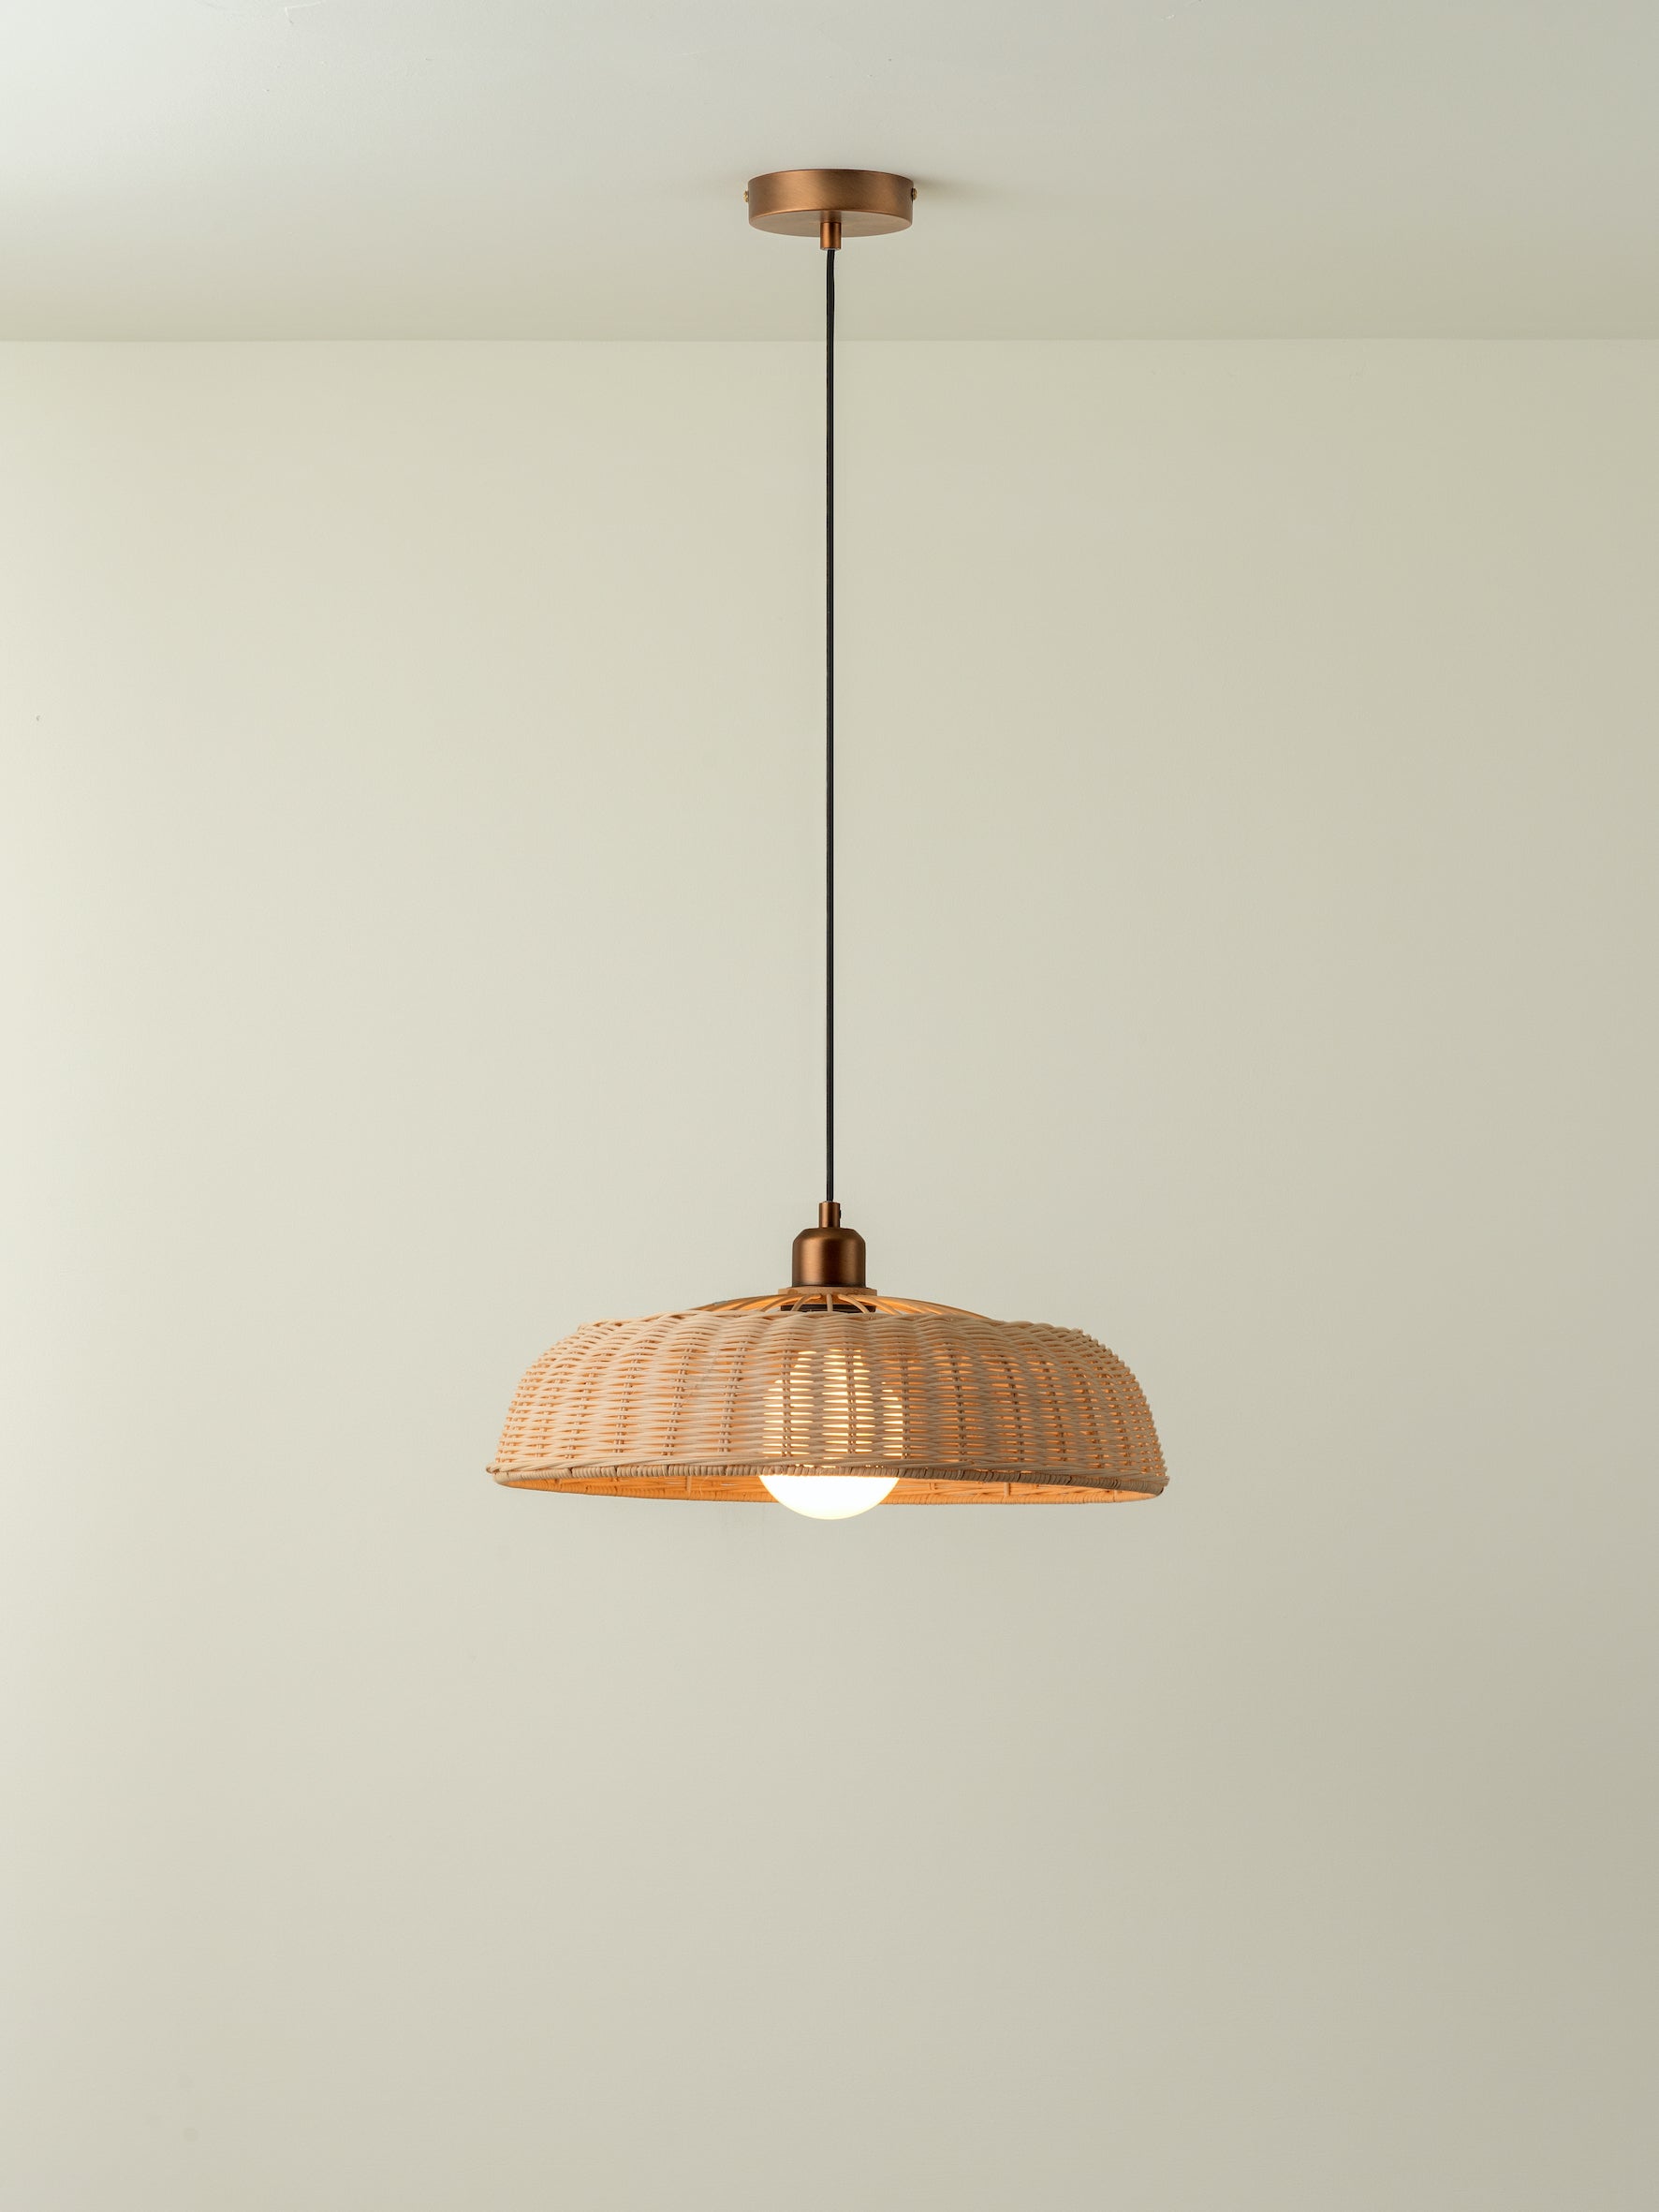 Capel - 1 light burnished brass drop cap lampholder kit | Ceiling Light | Lights & Lamps | UK | Modern Affordable Designer Lighting